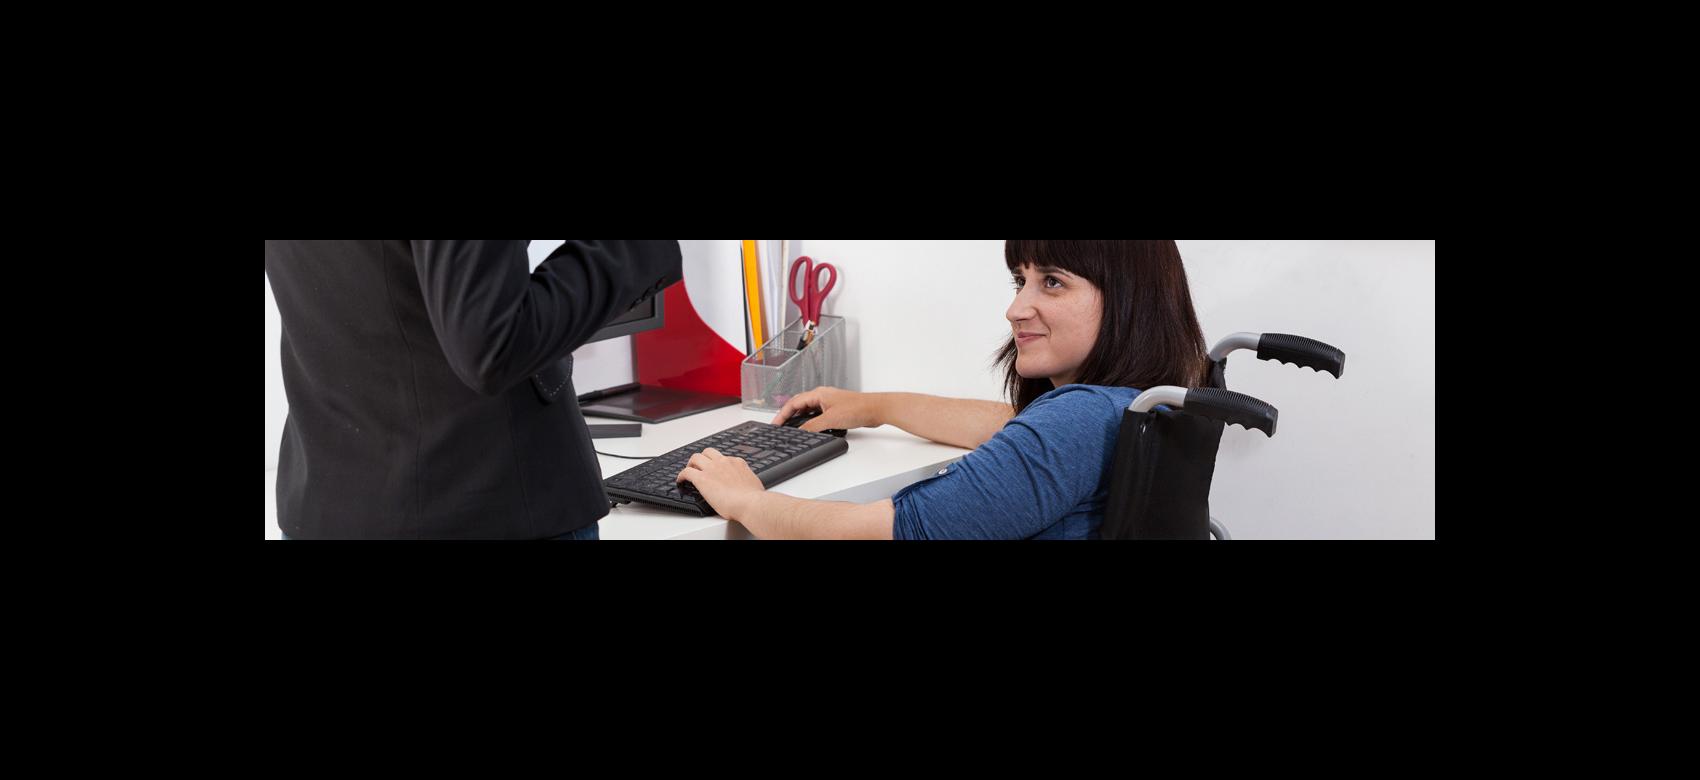 Imagen ilustrativa de mujer usuaria de silla de ruedas trabajando